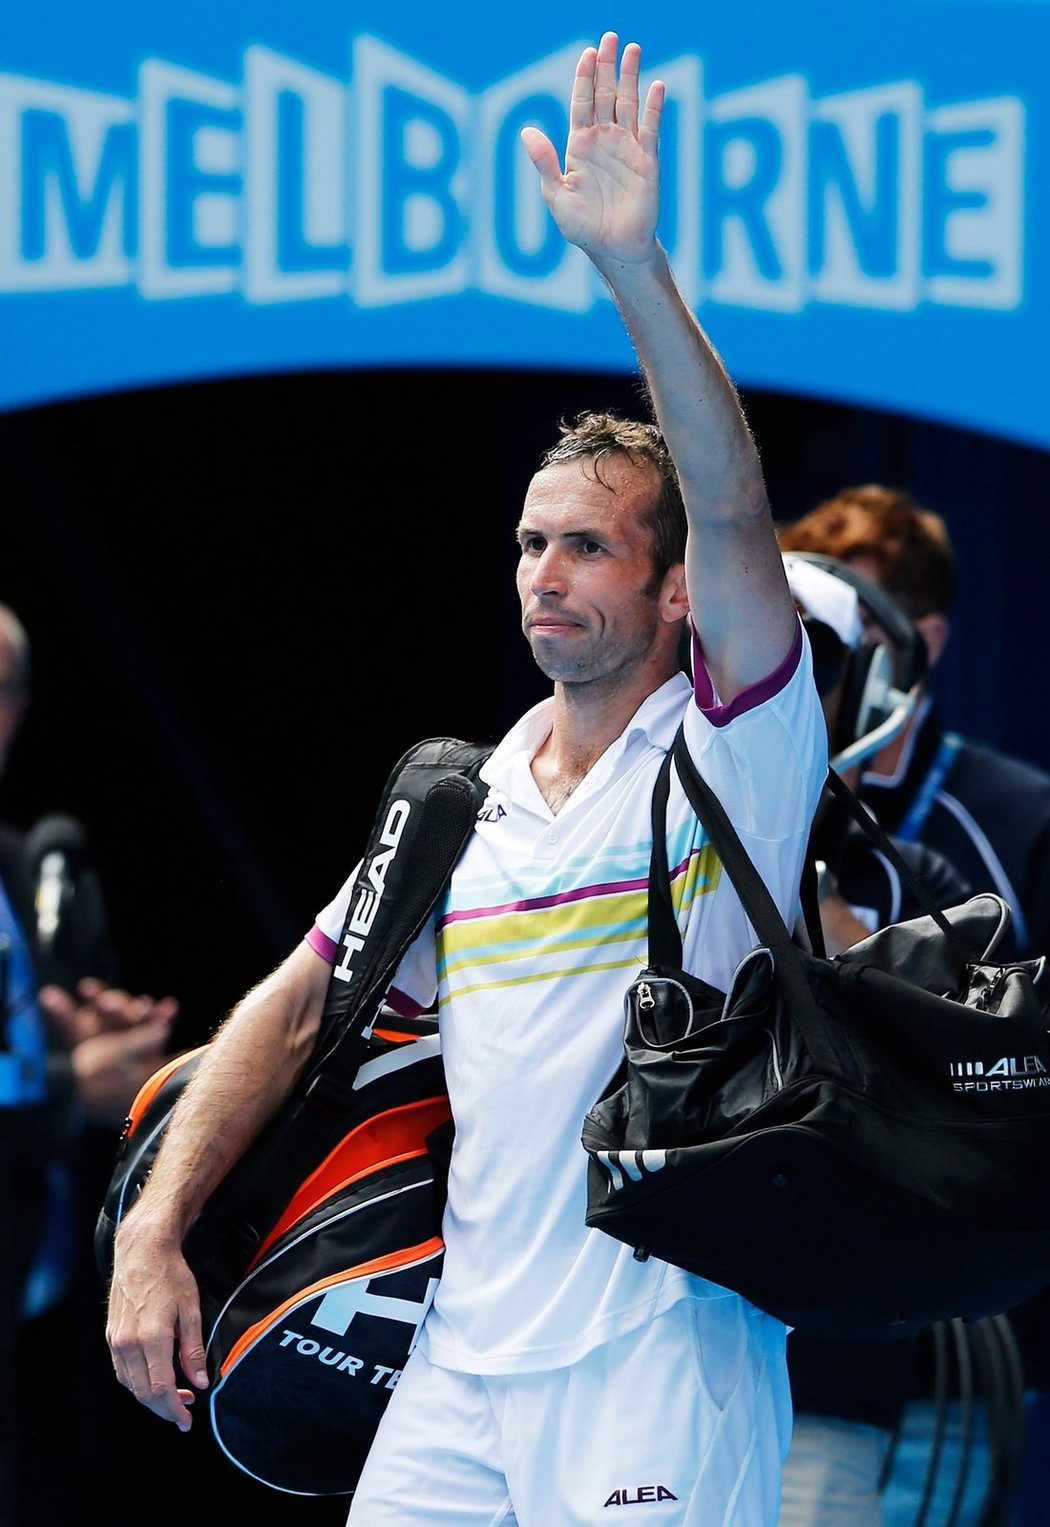 Radek Štěpánek zdraví diváky po prohraném duelu s Novakem Djokovičem na Australian Open